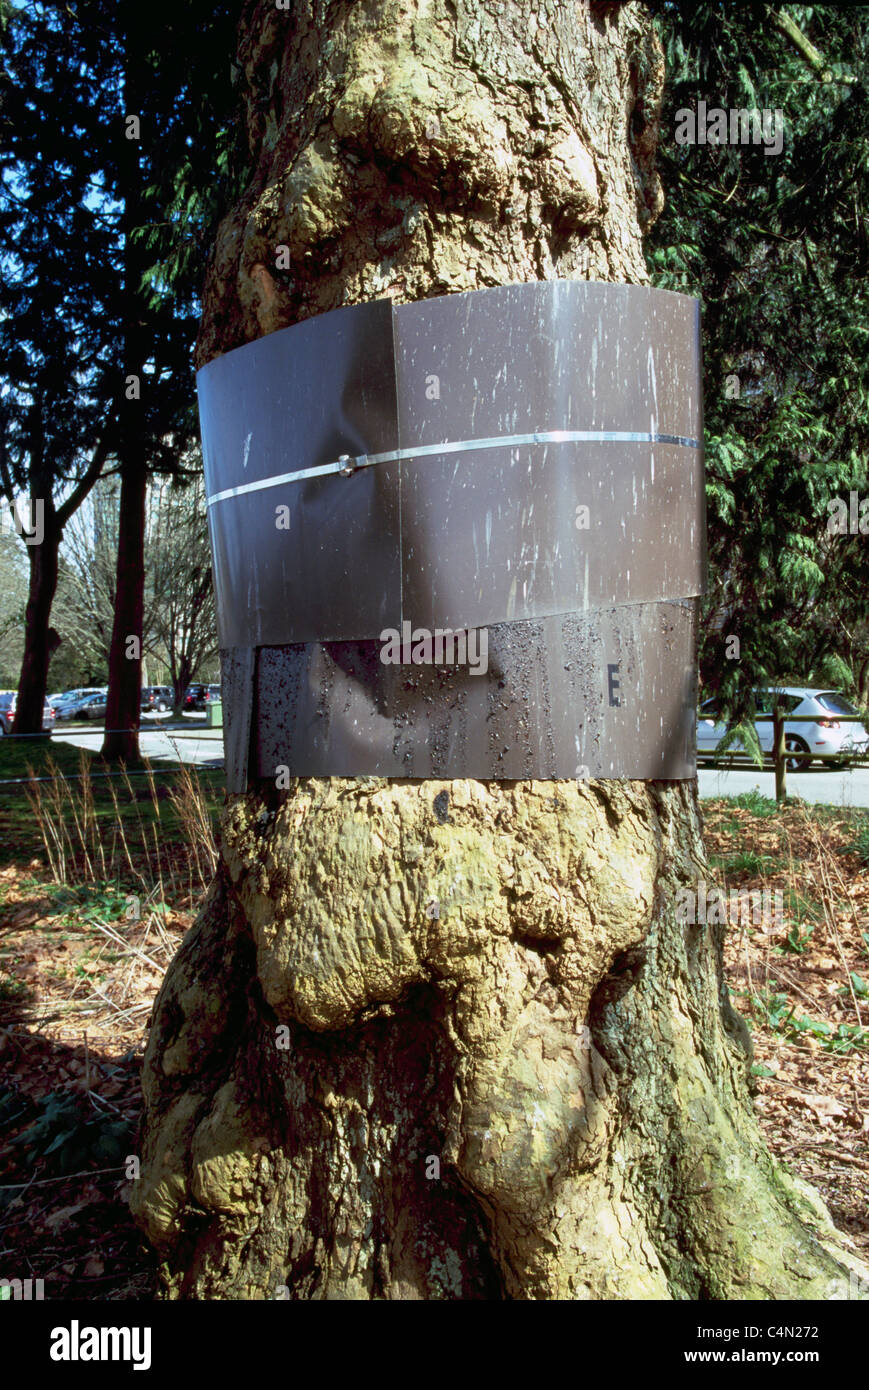 Streifenbildung auf Baum, um zu verhindern, dass Waschbären aus Kletterbäume, Vogeleier aus Nest, Westküste BC, Britisch-Kolumbien, Kanada zu stehlen Stockfoto